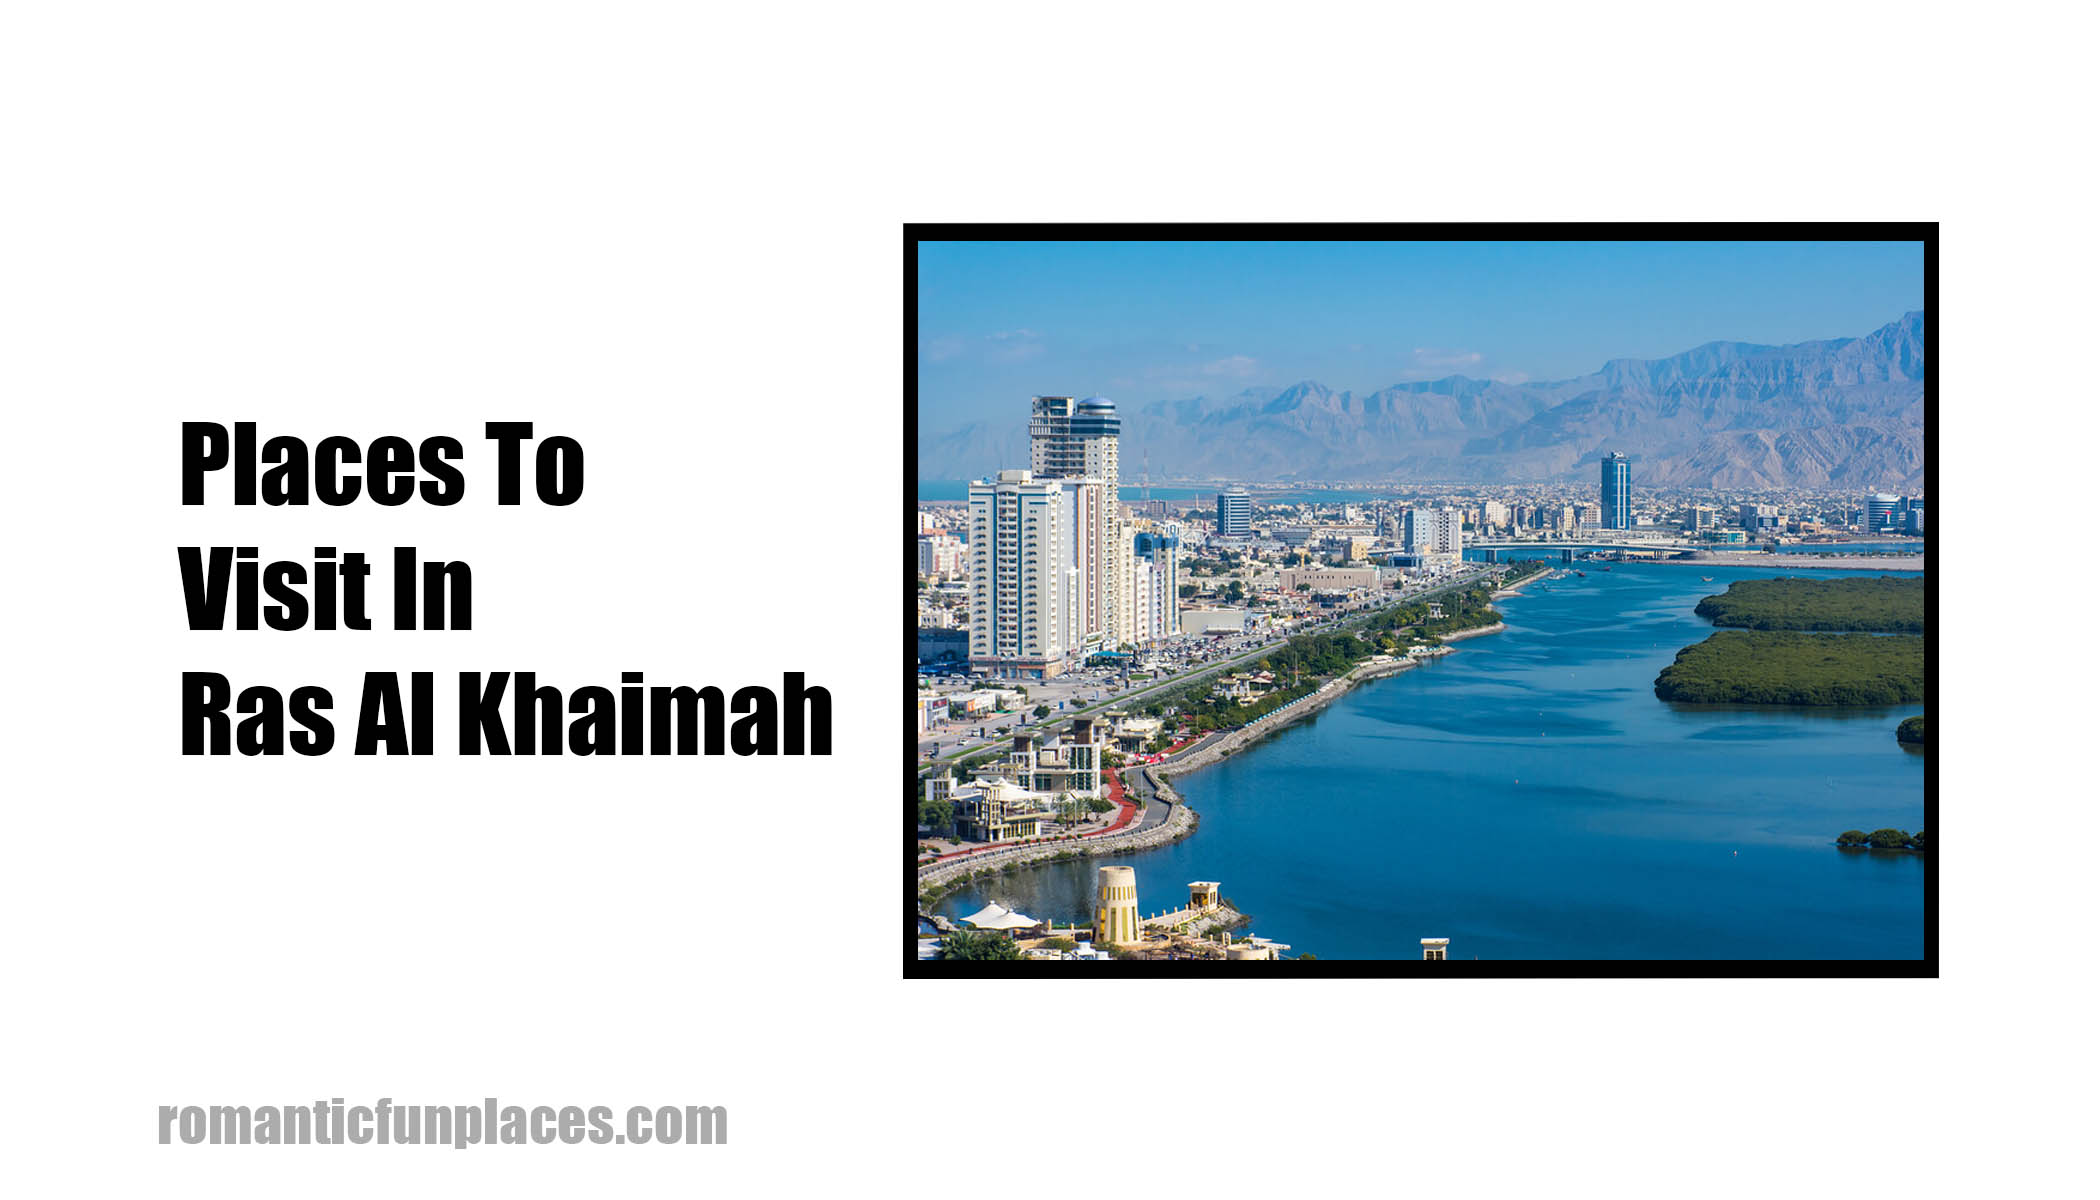 Places To Visit In Ras Al Khaimah